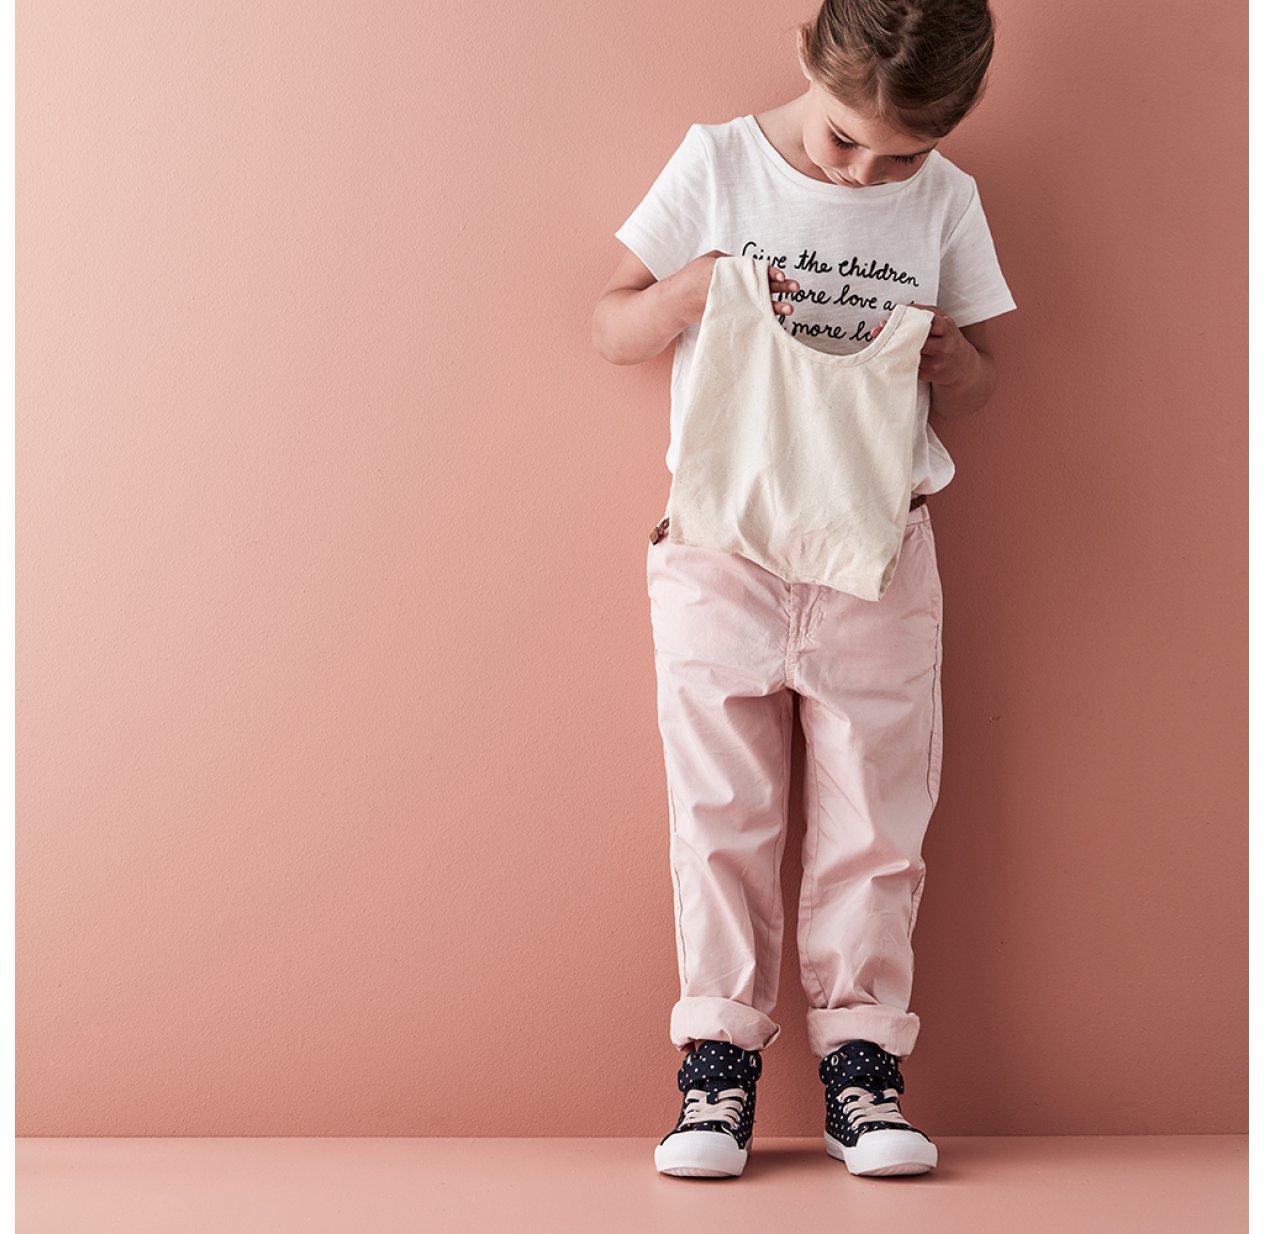 Vêtements Pour Enfants Dans Un Sac à Provisions Concept De